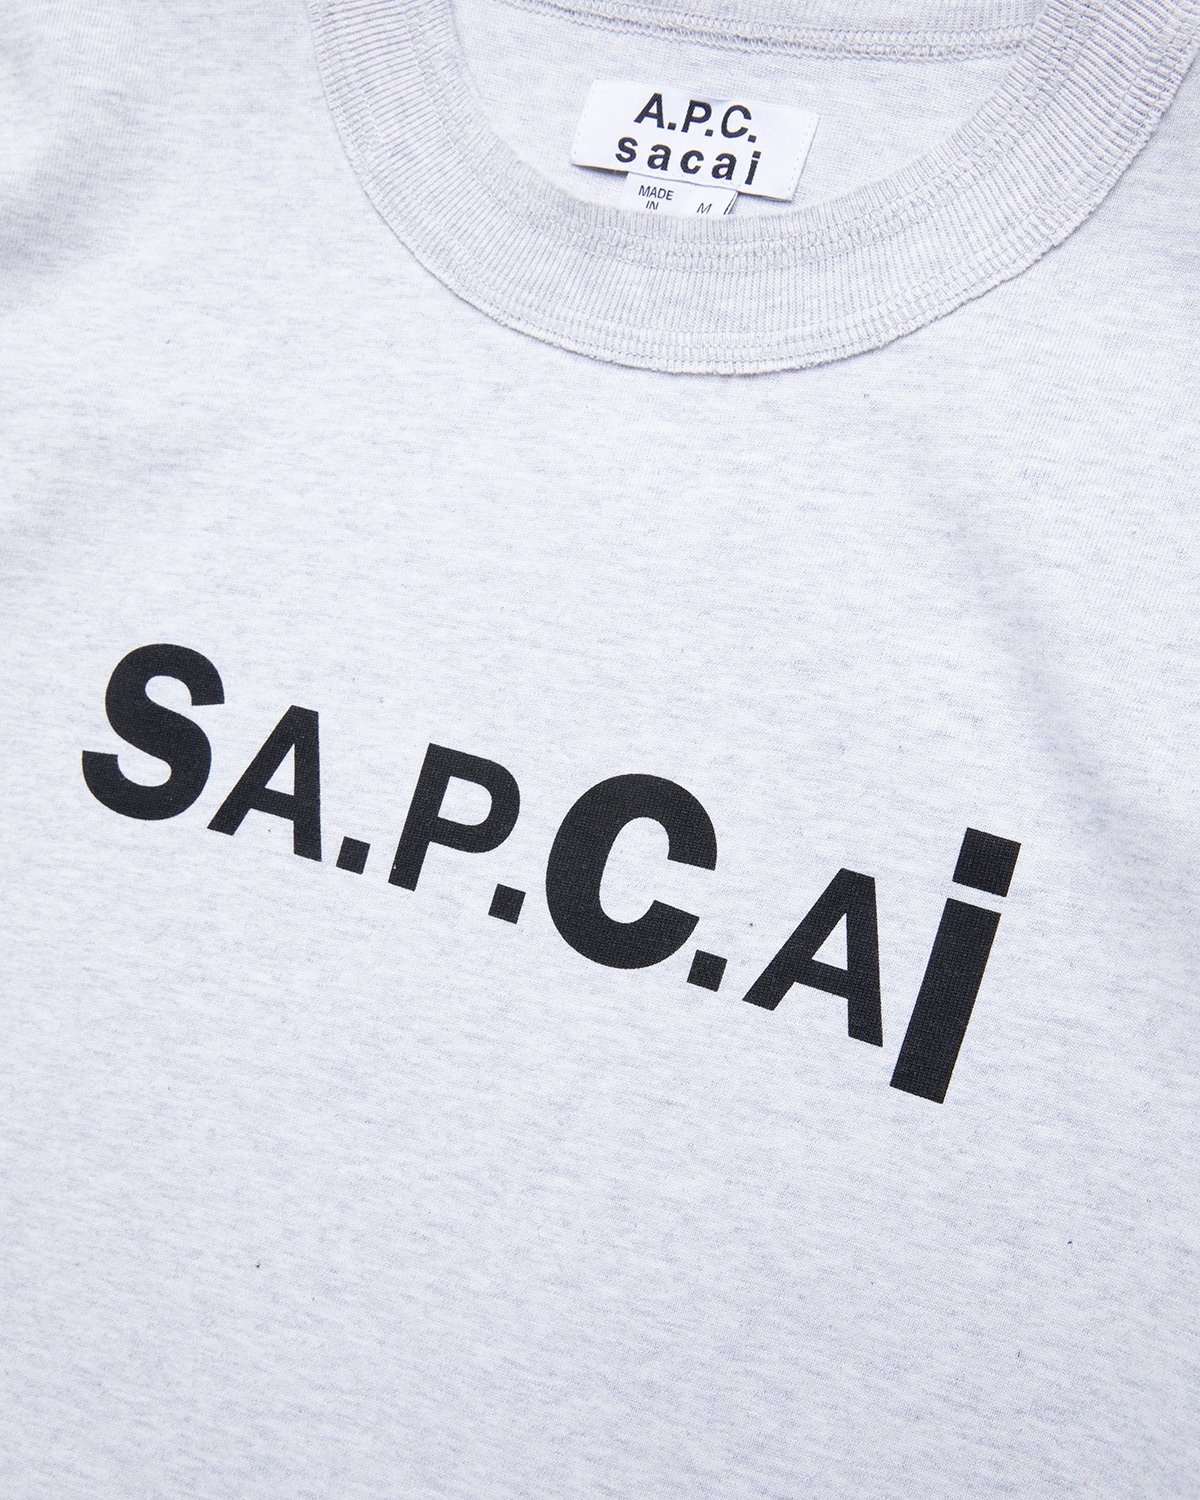 A.P.C. x Sacai – Kiyo T-Shirt Light Grey - T-shirts - Grey - Image 3